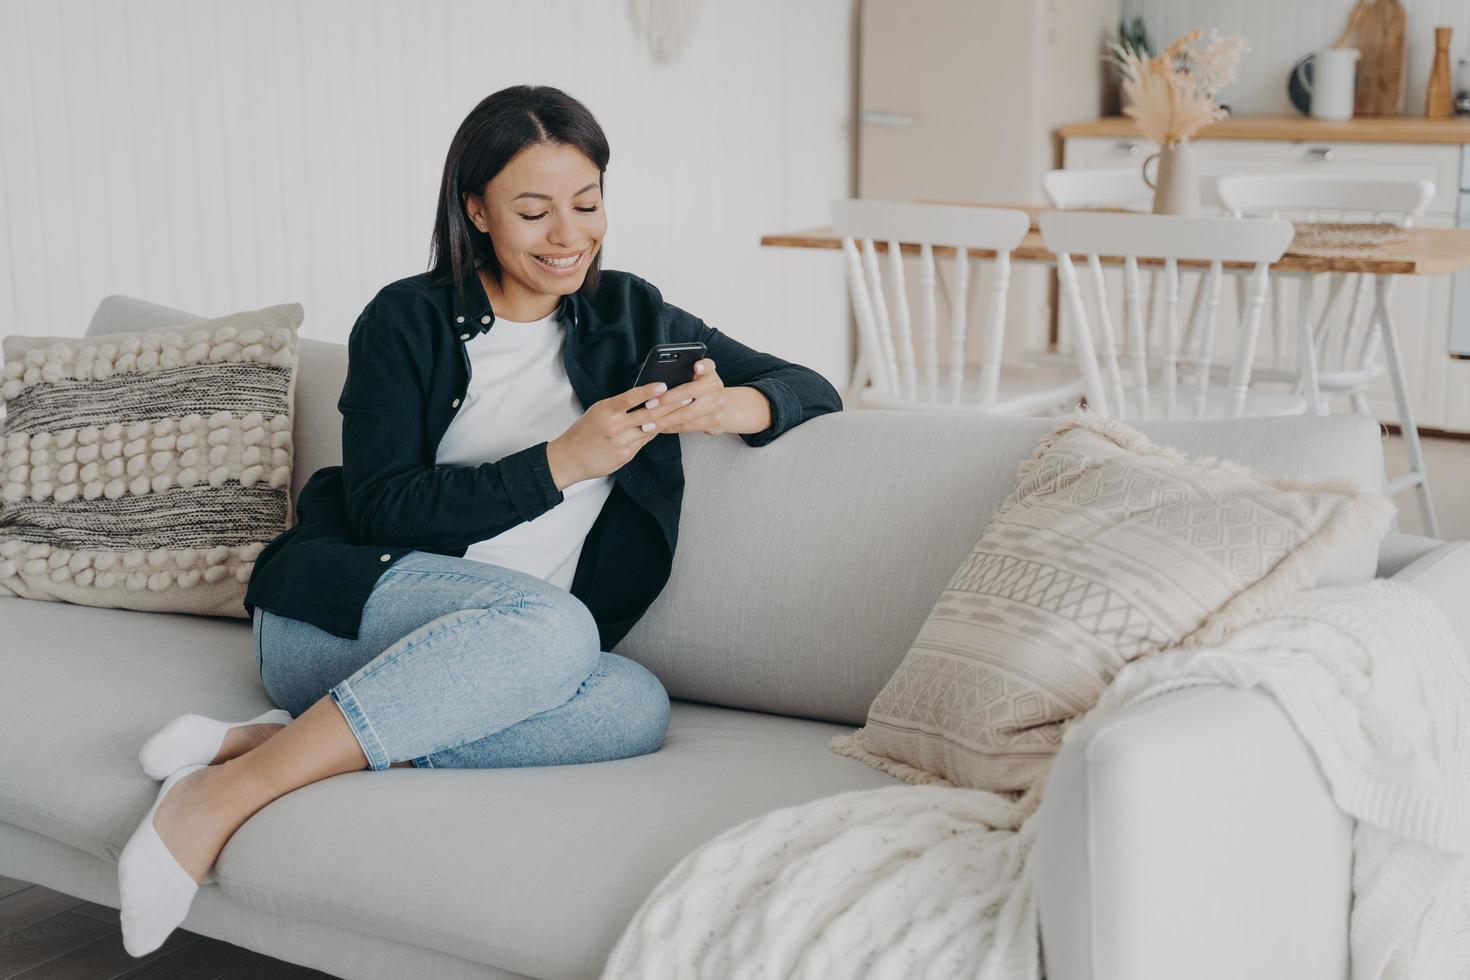 une femme souriante utilise des applications téléphoniques, discute sur les réseaux sociaux, fait des achats en ligne, s'assoit sur un canapé à la maison photo